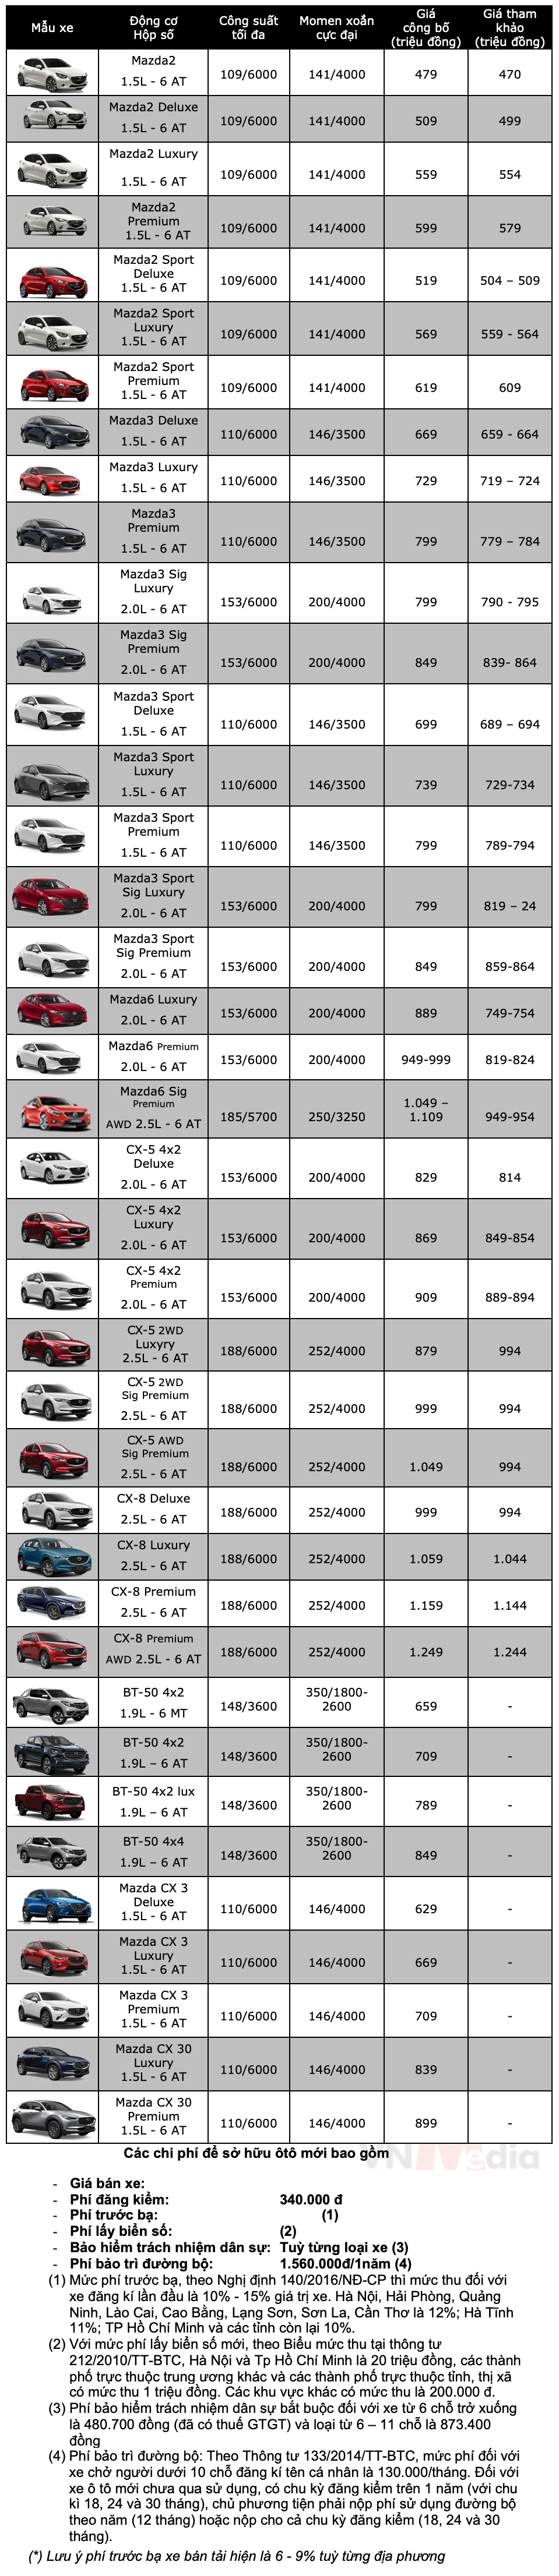 Bảng giá xe Mazda tháng 1: Mazda BT-50 tặng 100% lệ phí trước bạ lên tới hơn 60 triệu đồng - ảnh 4